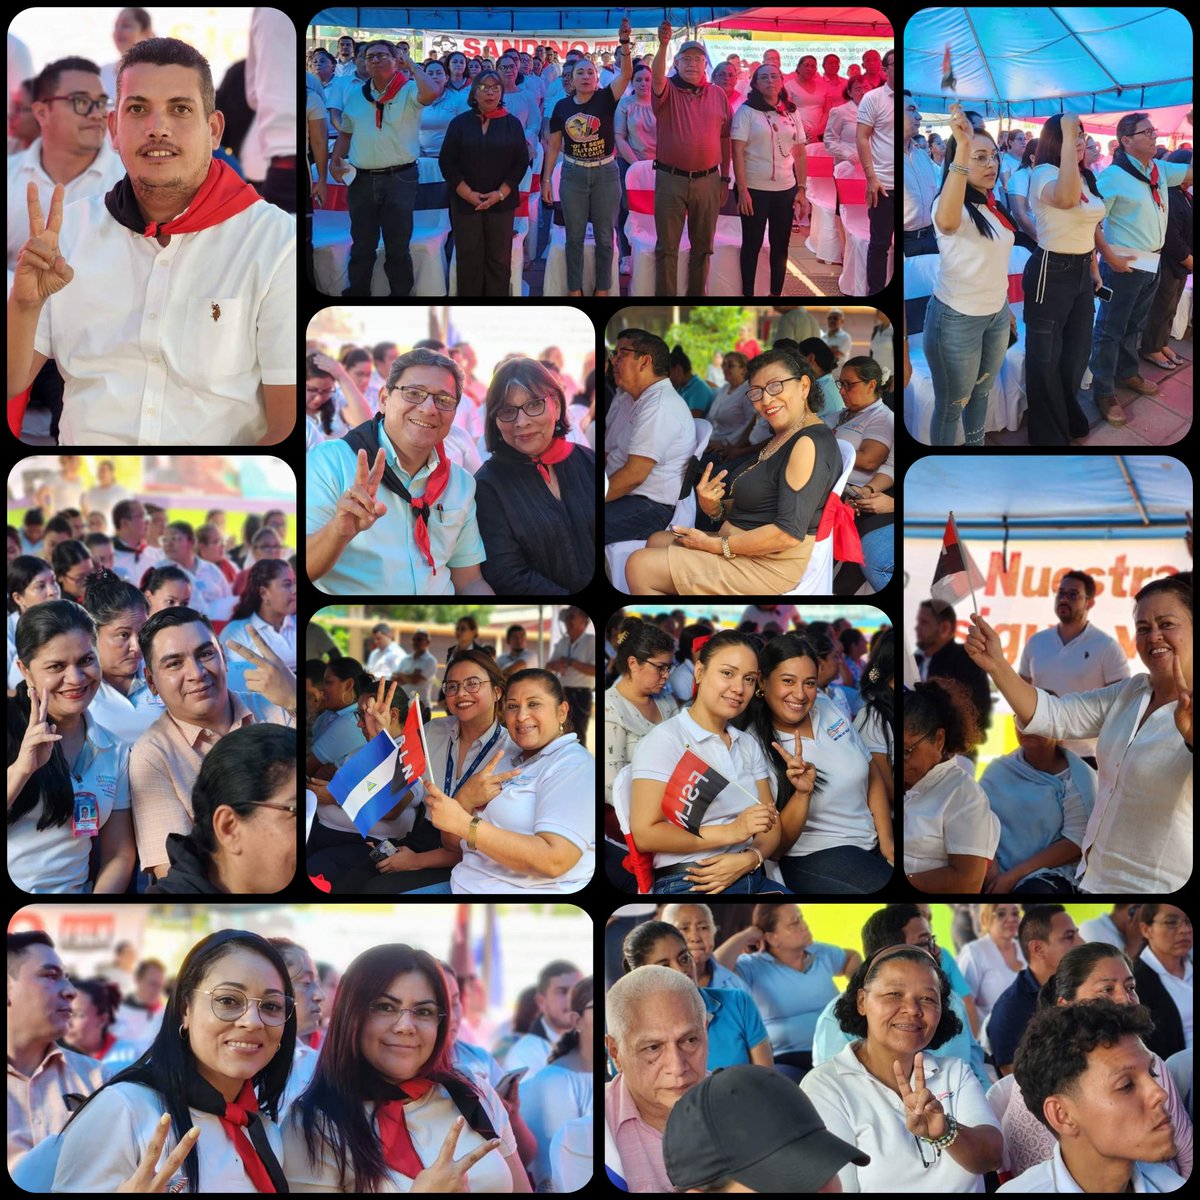 Trabajadores del MINSA Celebraron la Paz y Soberanía en ocasión al Día de la Dignidad Nacional en Nicaragua. #UnidosEnVictorias #SoberaníayDignidadNacional @molotovdigital_ @db_nicaragua @FirmesP @PortoSandinista